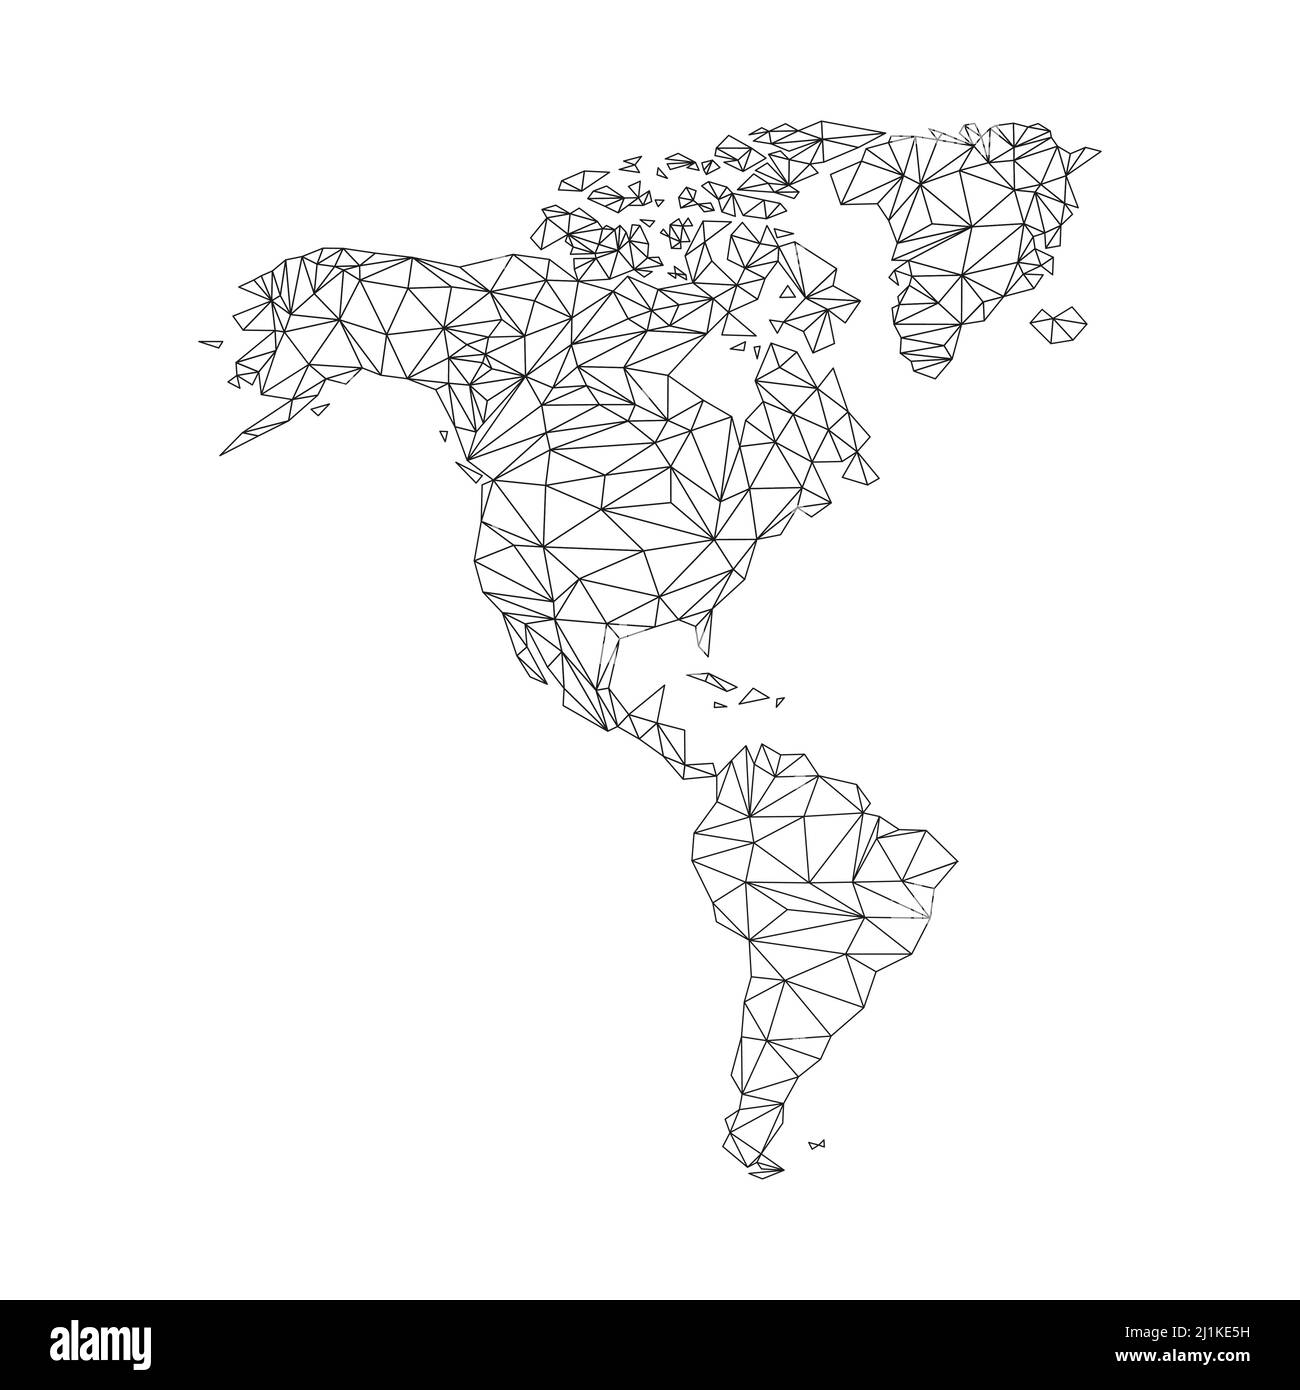 Nord- und Südamerika Karte. Weltkarte mit dreieckigen Formen. Stock Vektor